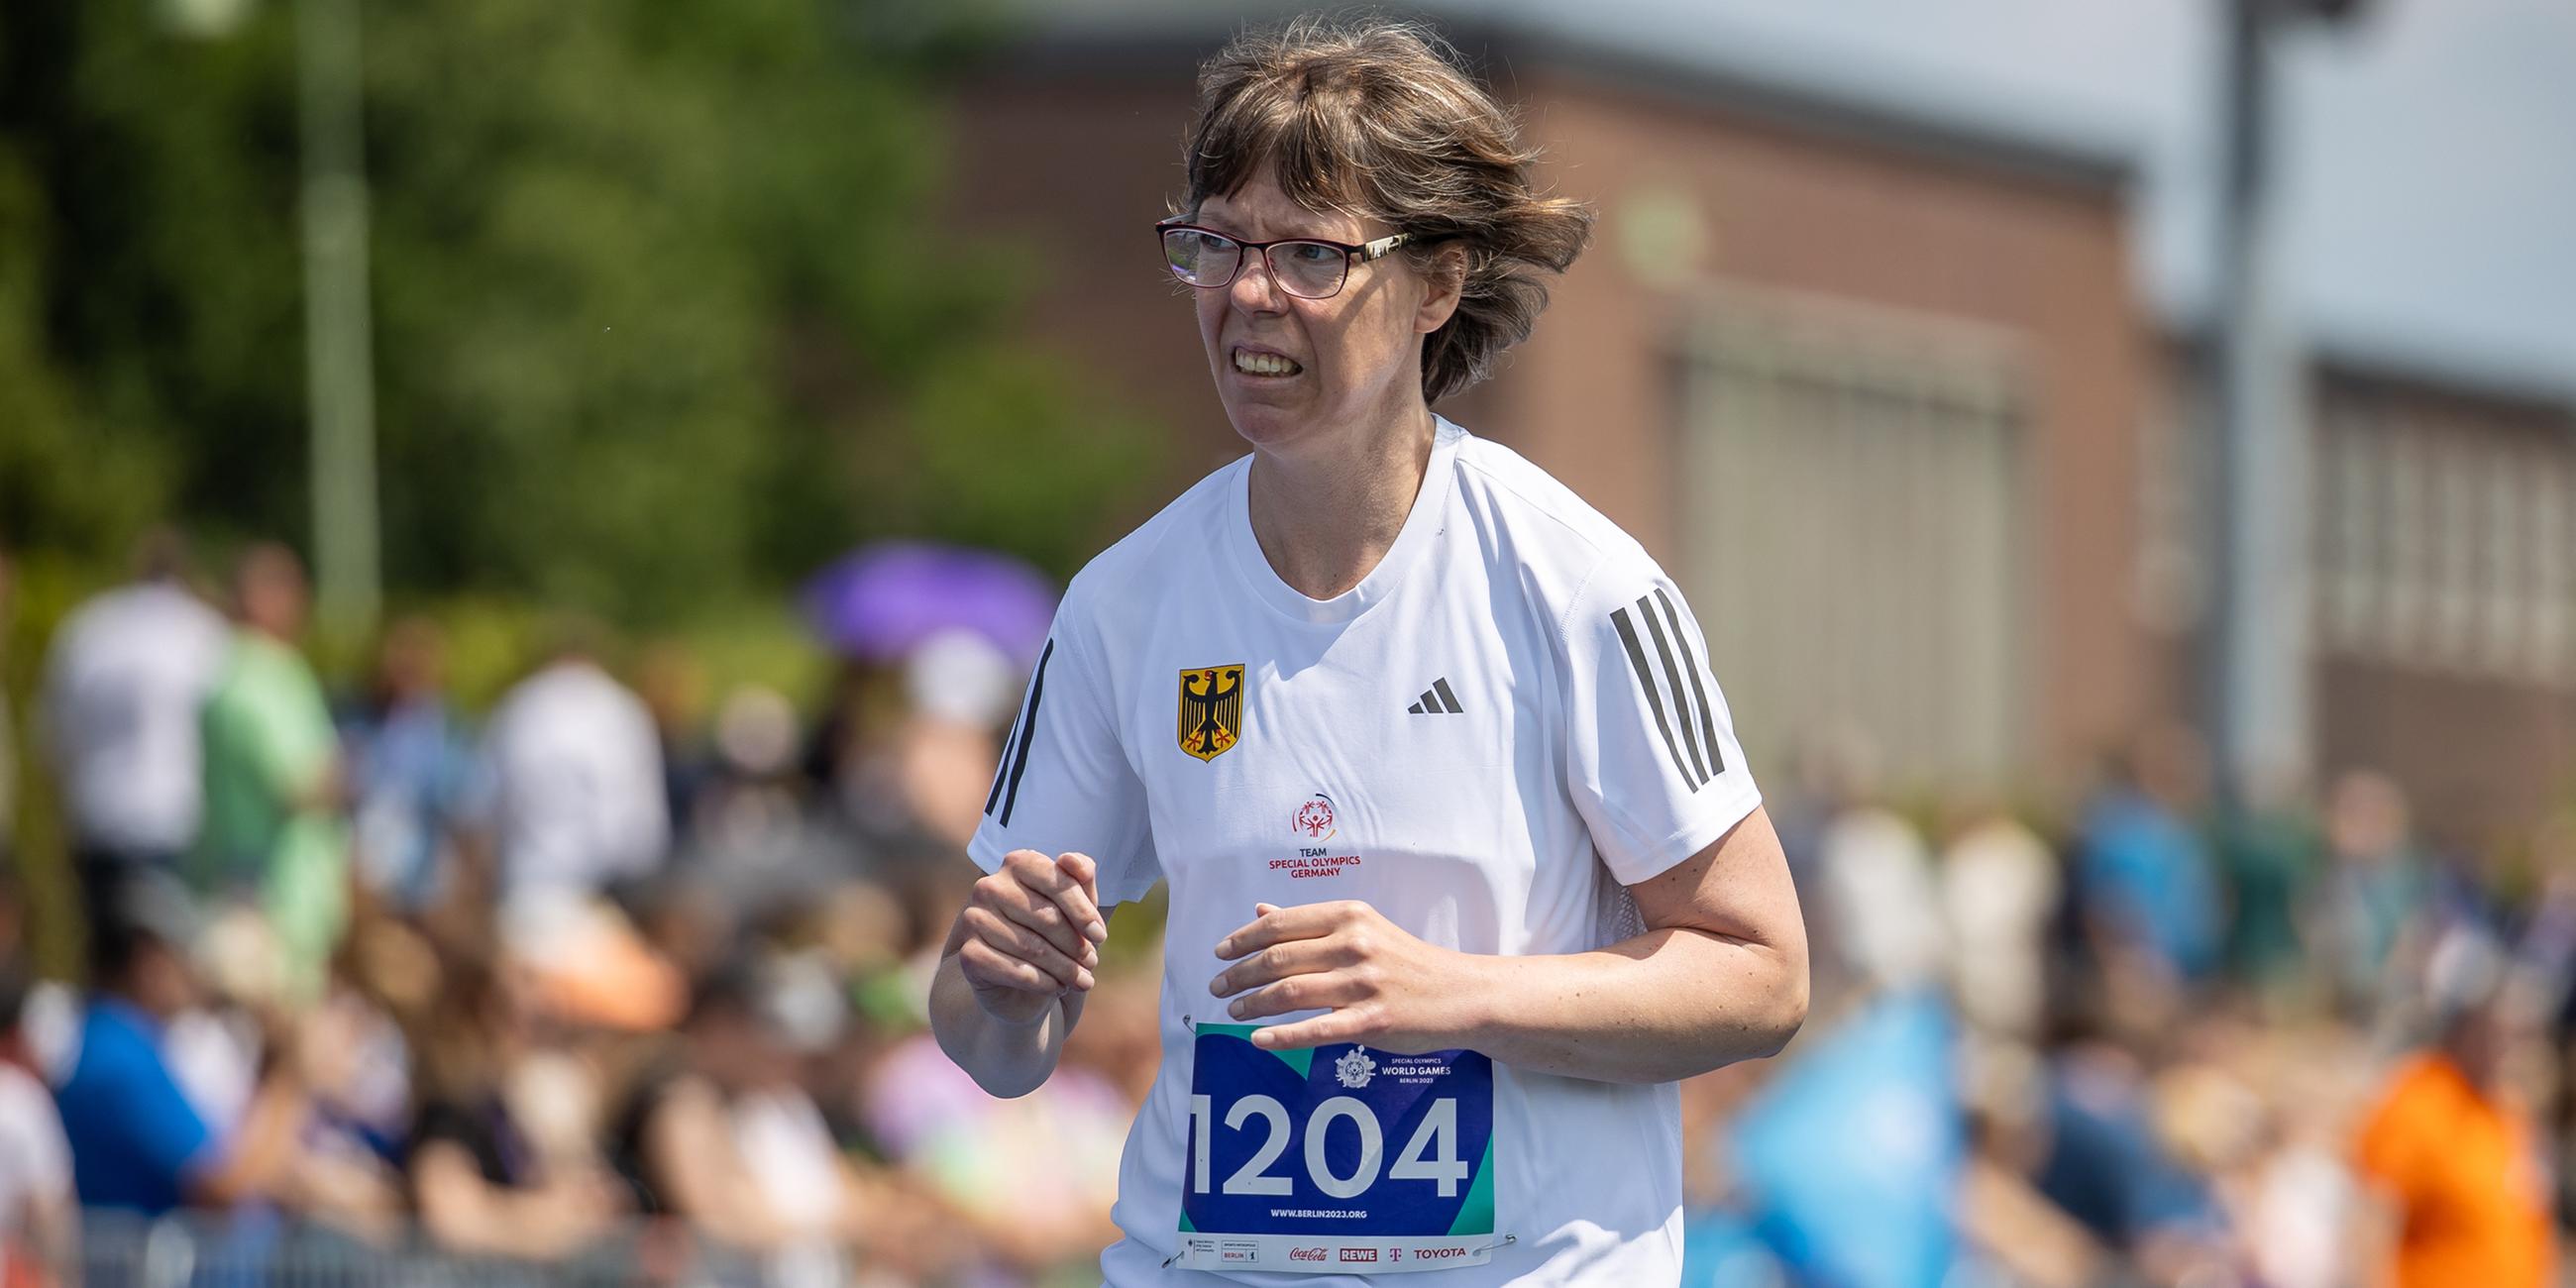 Annika Meissner aus Hessen läuft auf der Bahn im 1500 m Lauf